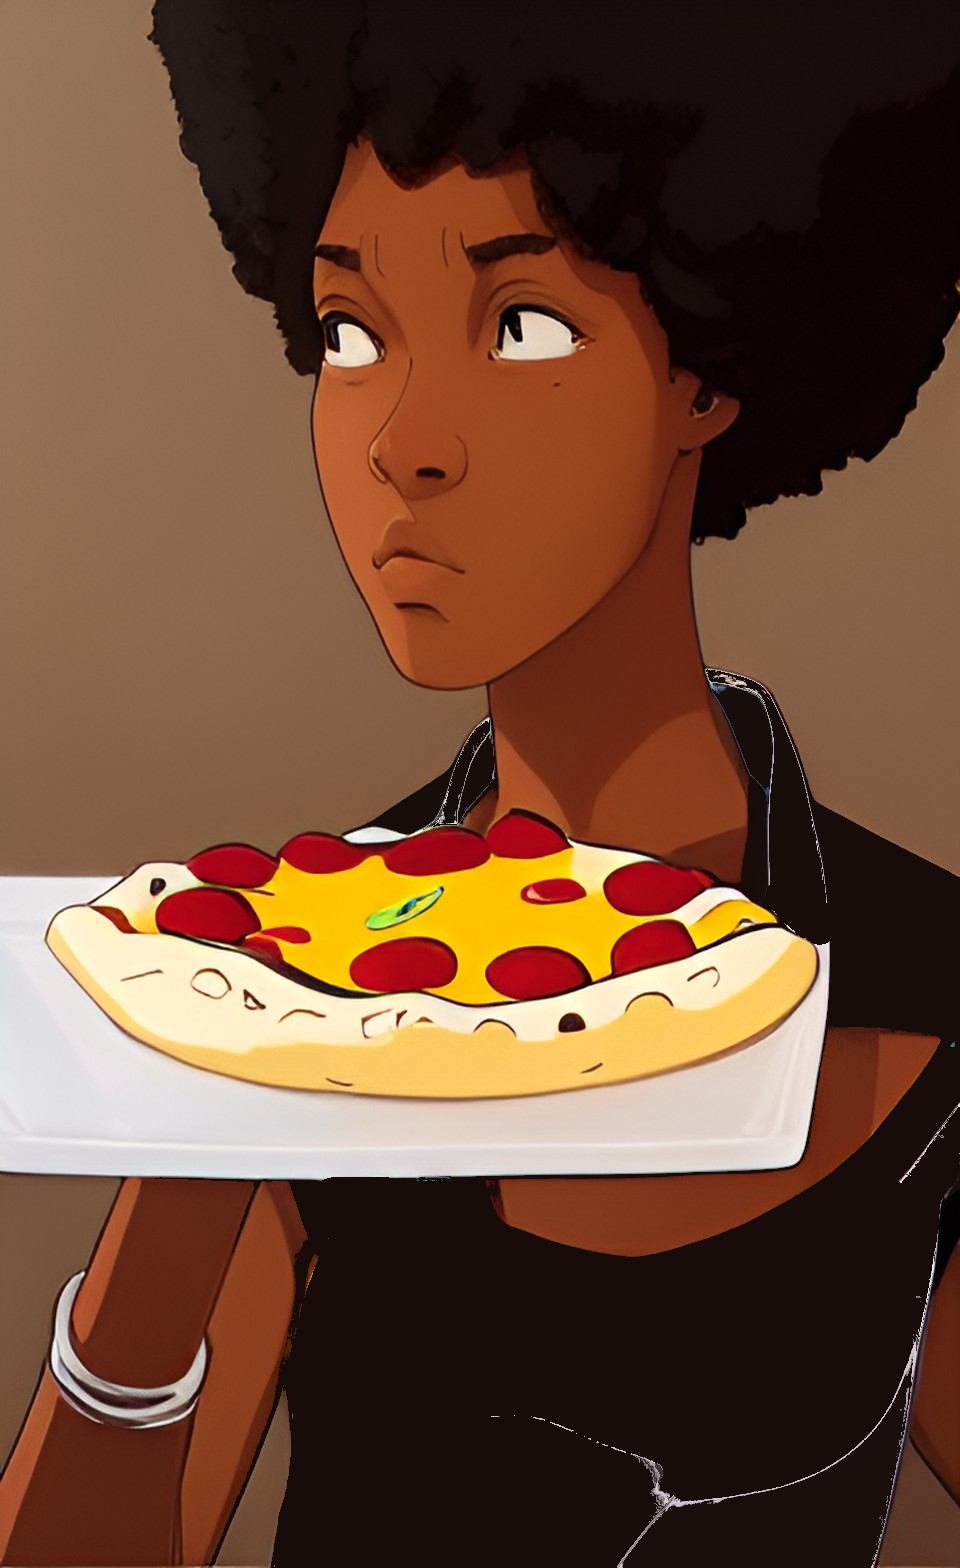 Banou eating pizza